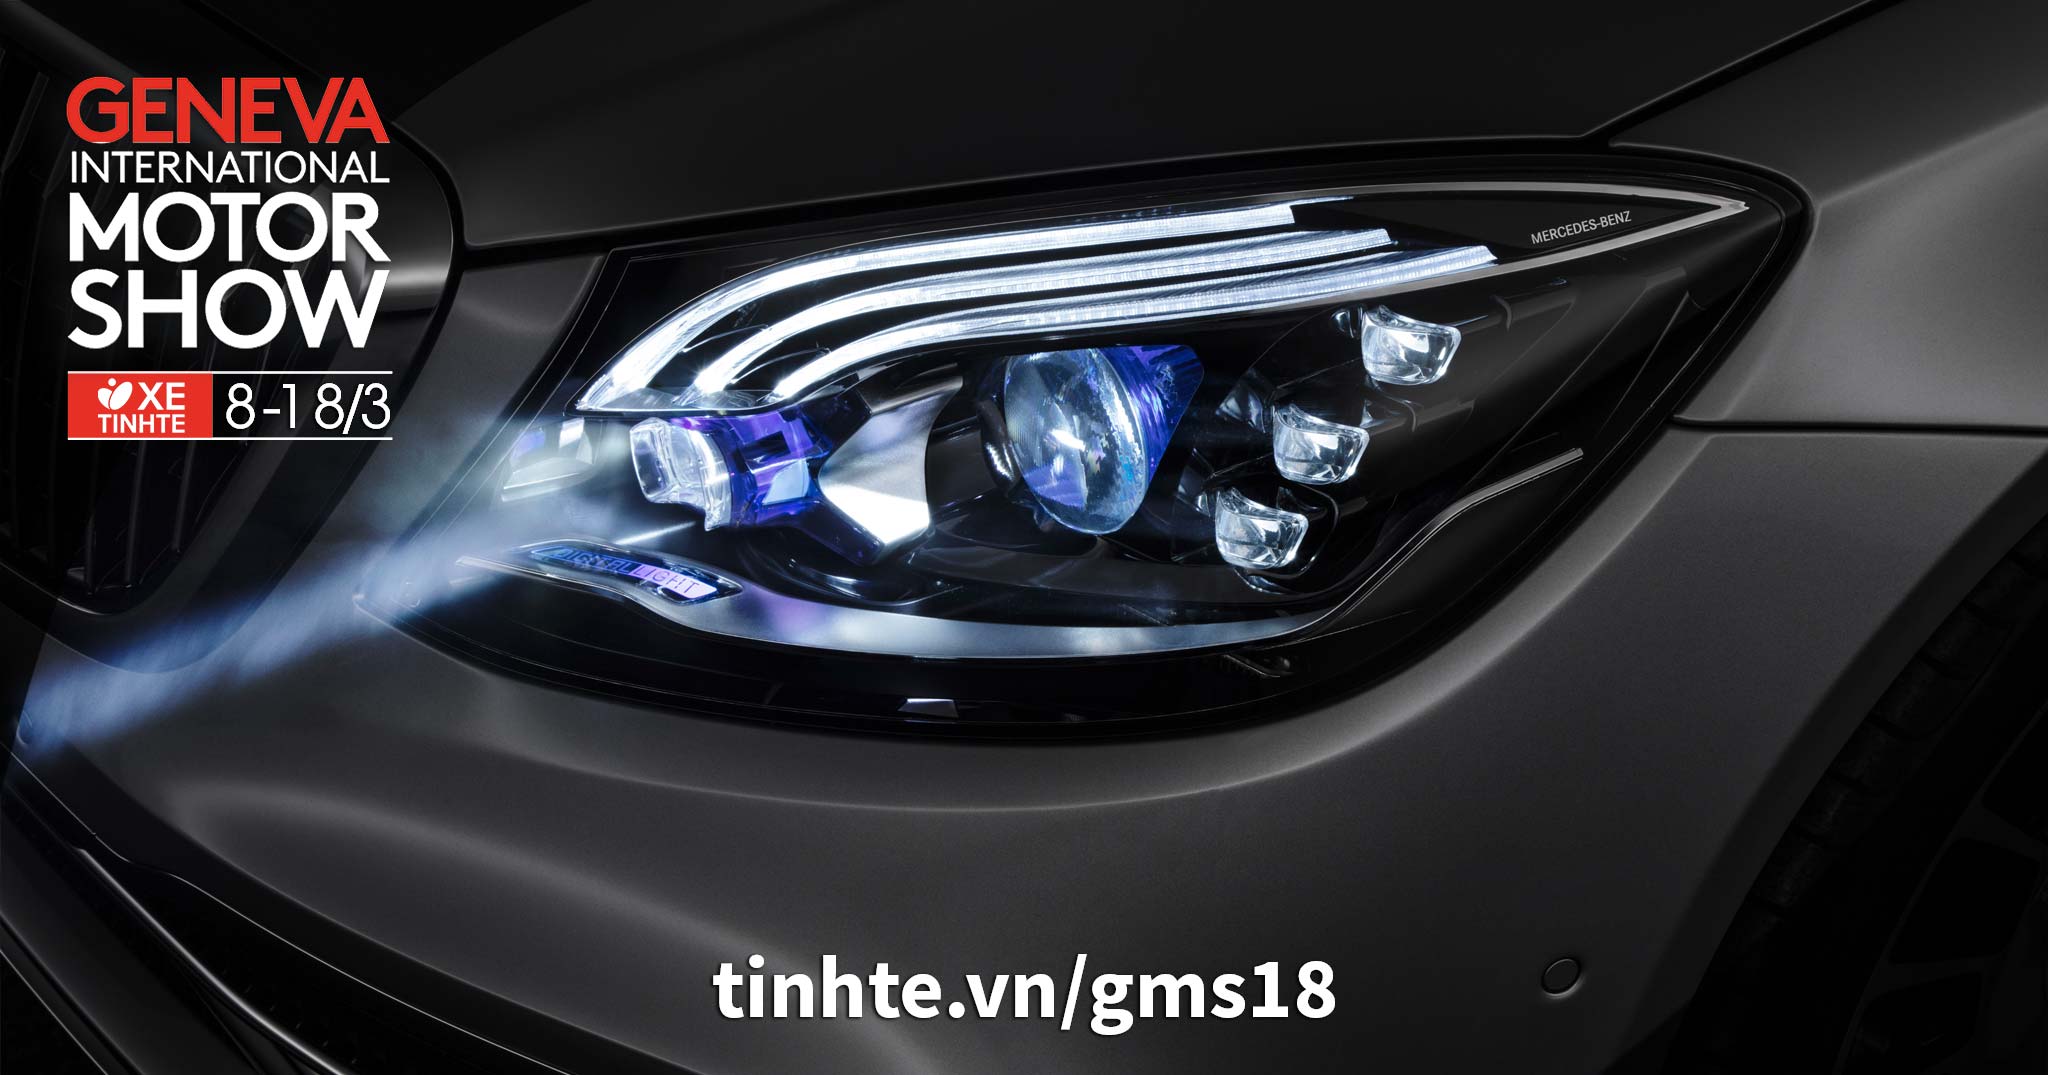 Mercedes-Benz giới thiệu công nghệ đèn pha Digital Light có khả năng chiếu thông báo lên mặt đường